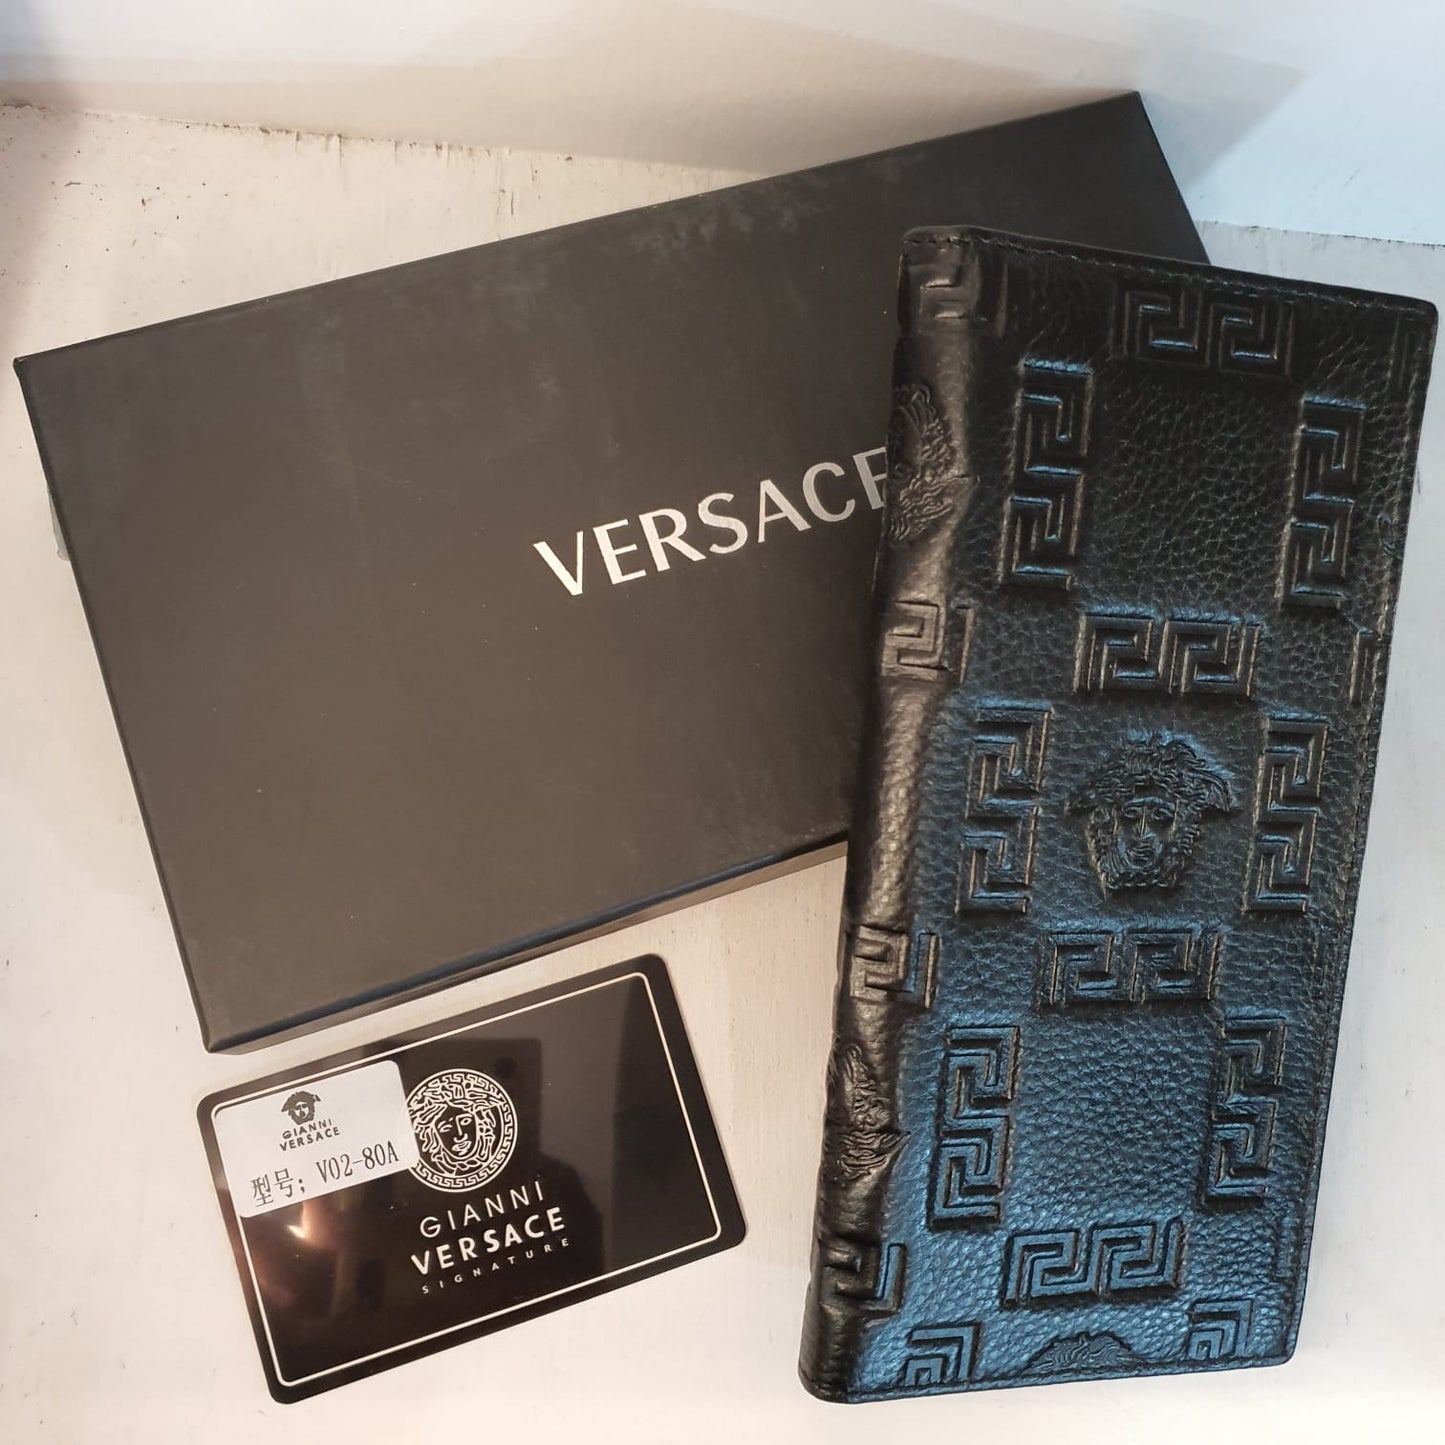 Versace Men's Wallet